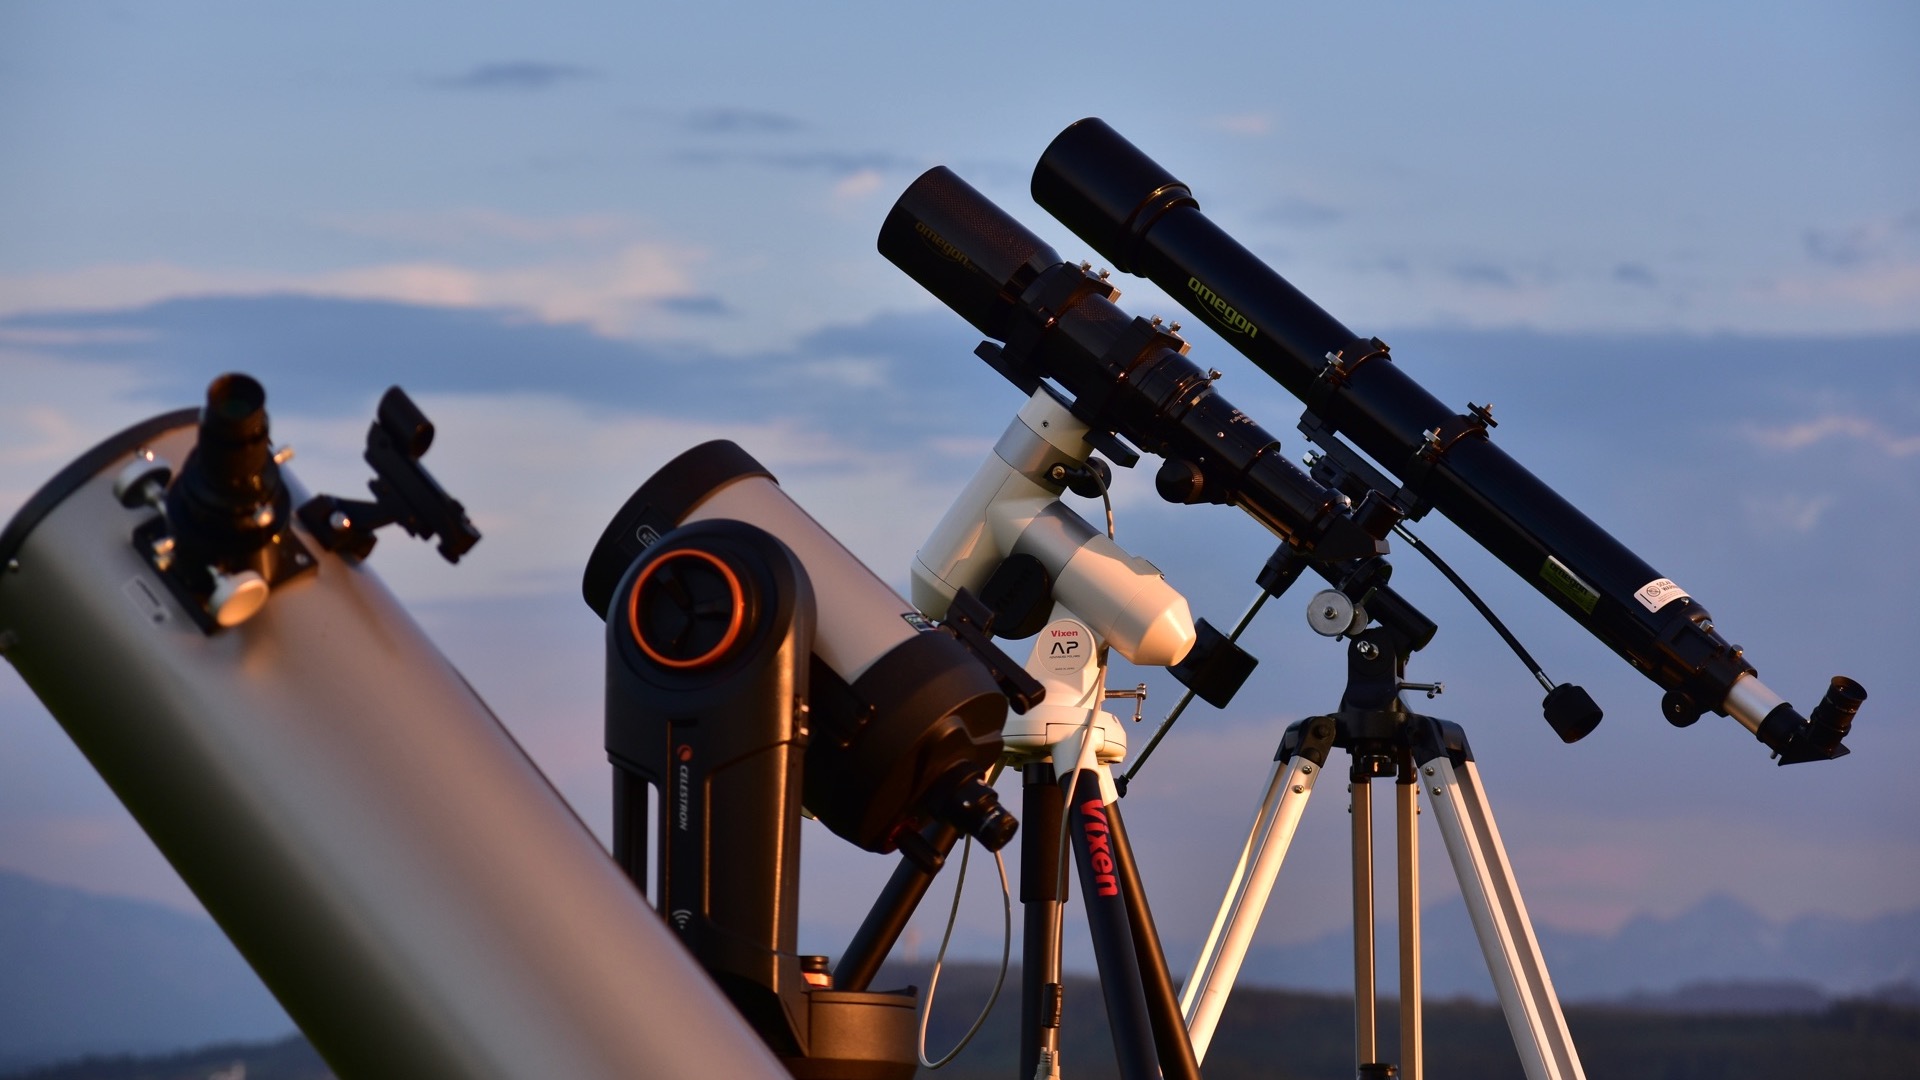 Los astrónomos primerizos tienen una complicada tarea a la hora de elegir telescopio, ¡pero nuestros expertos están ahí para asesorarle!